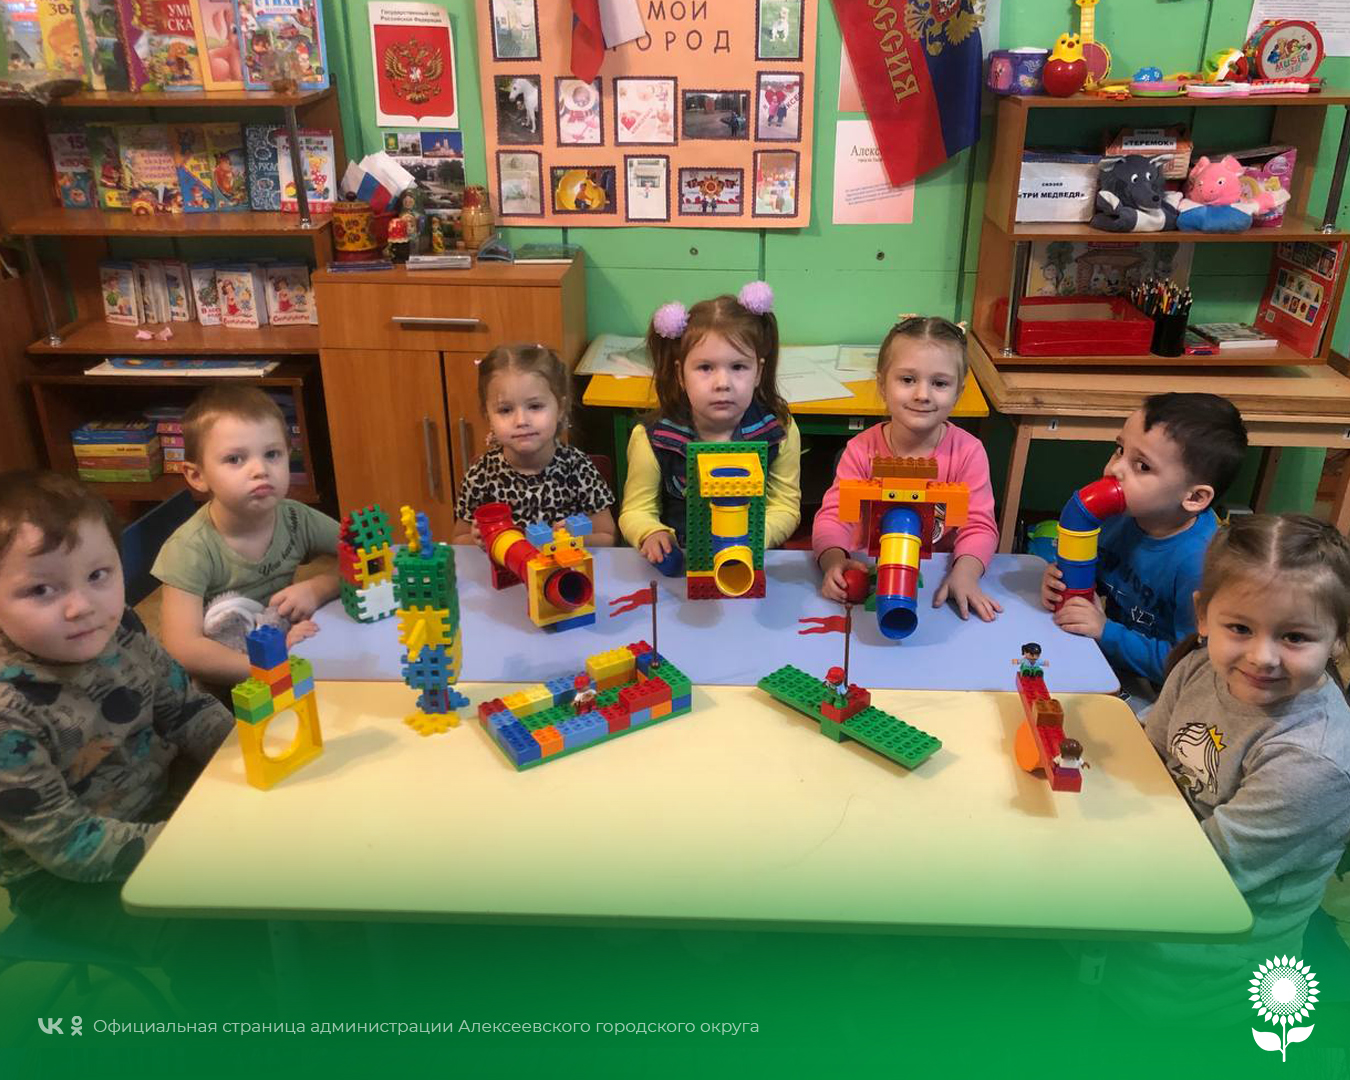 Воспитанники детских садов Алексеевского городского округа окунулись в мир изобретений и отметили праздник «День детей-изобретателей»